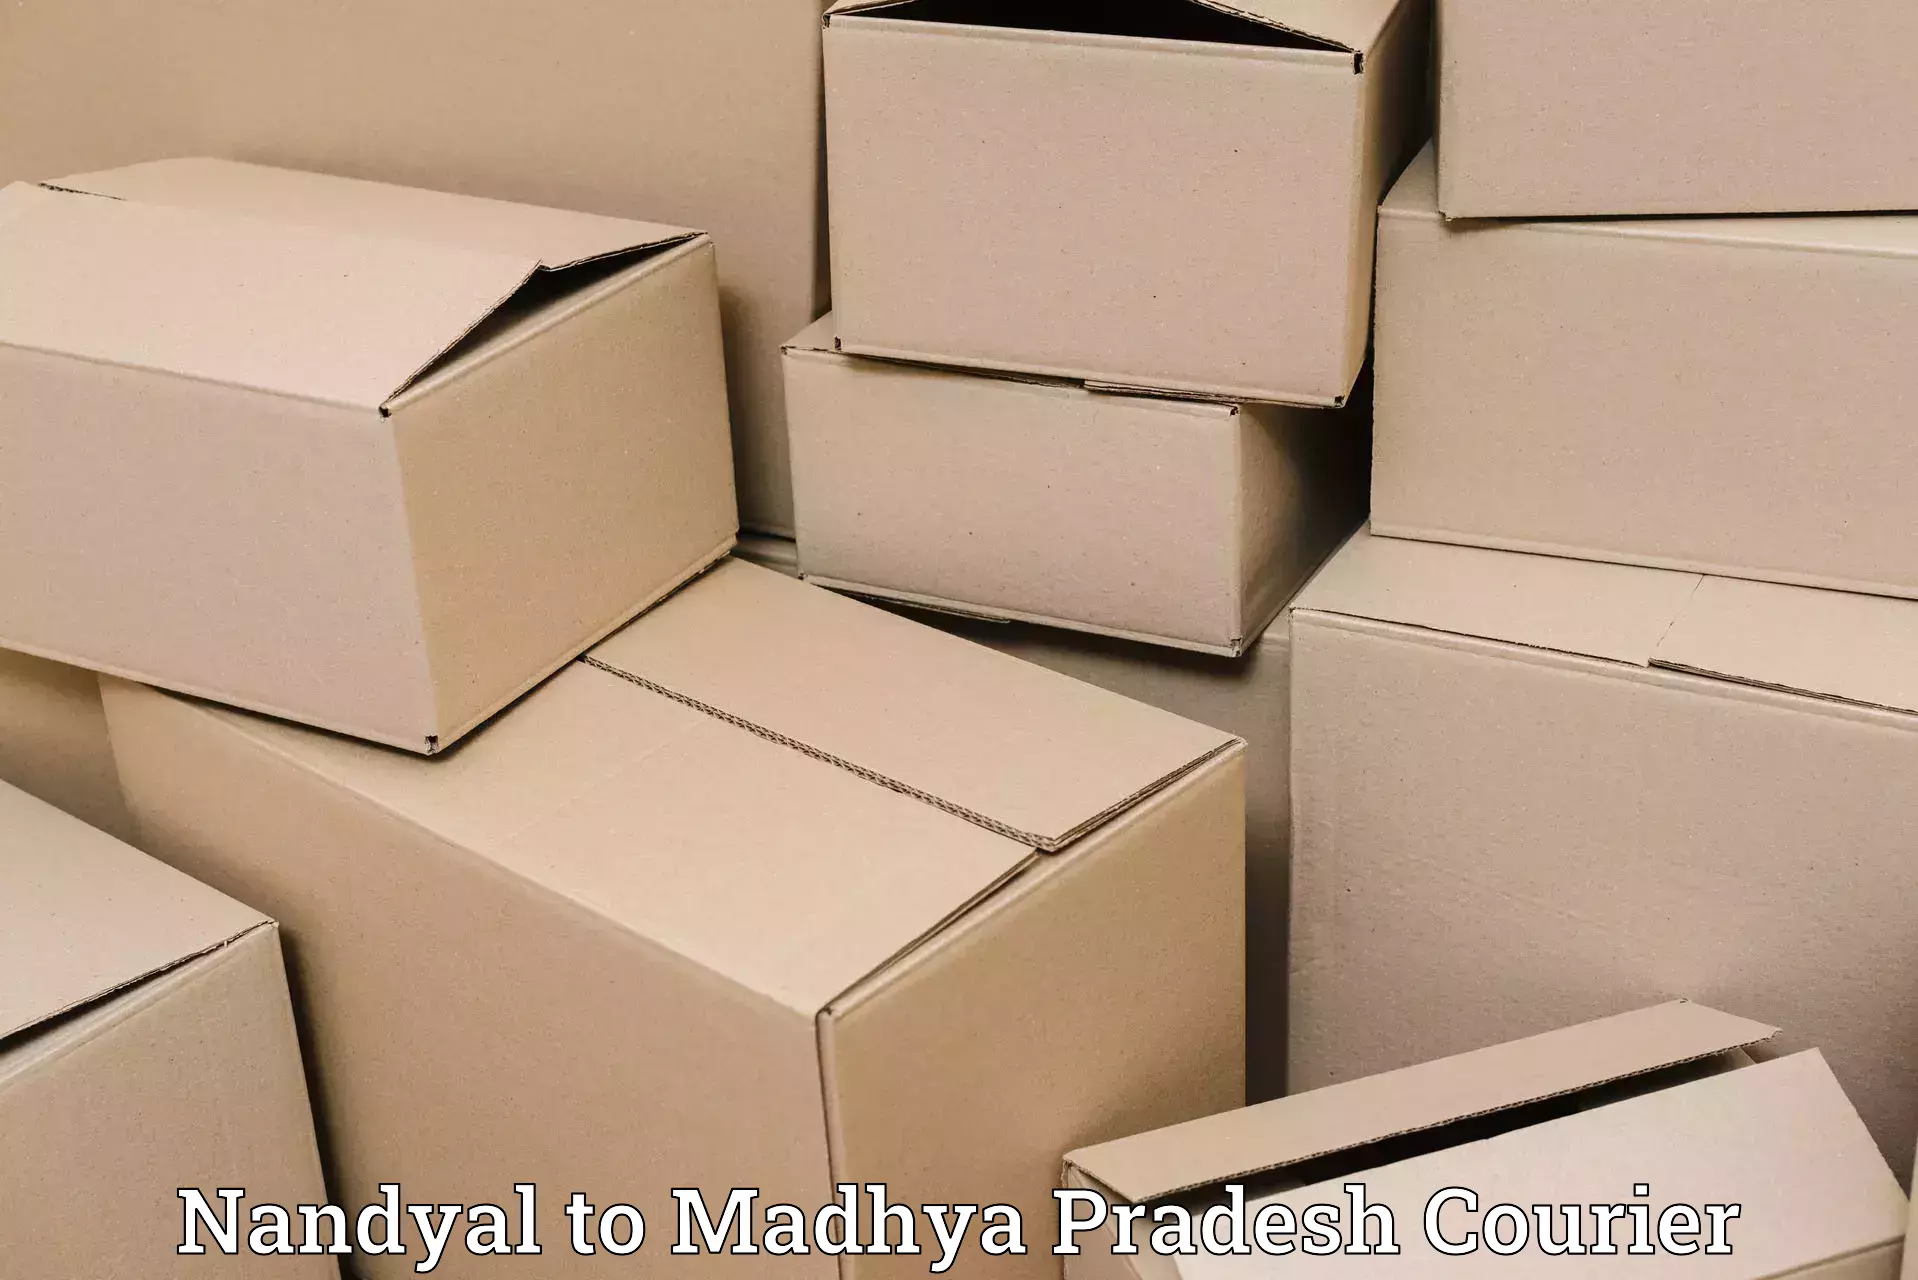 Lightweight parcel options Nandyal to Hoshangabad